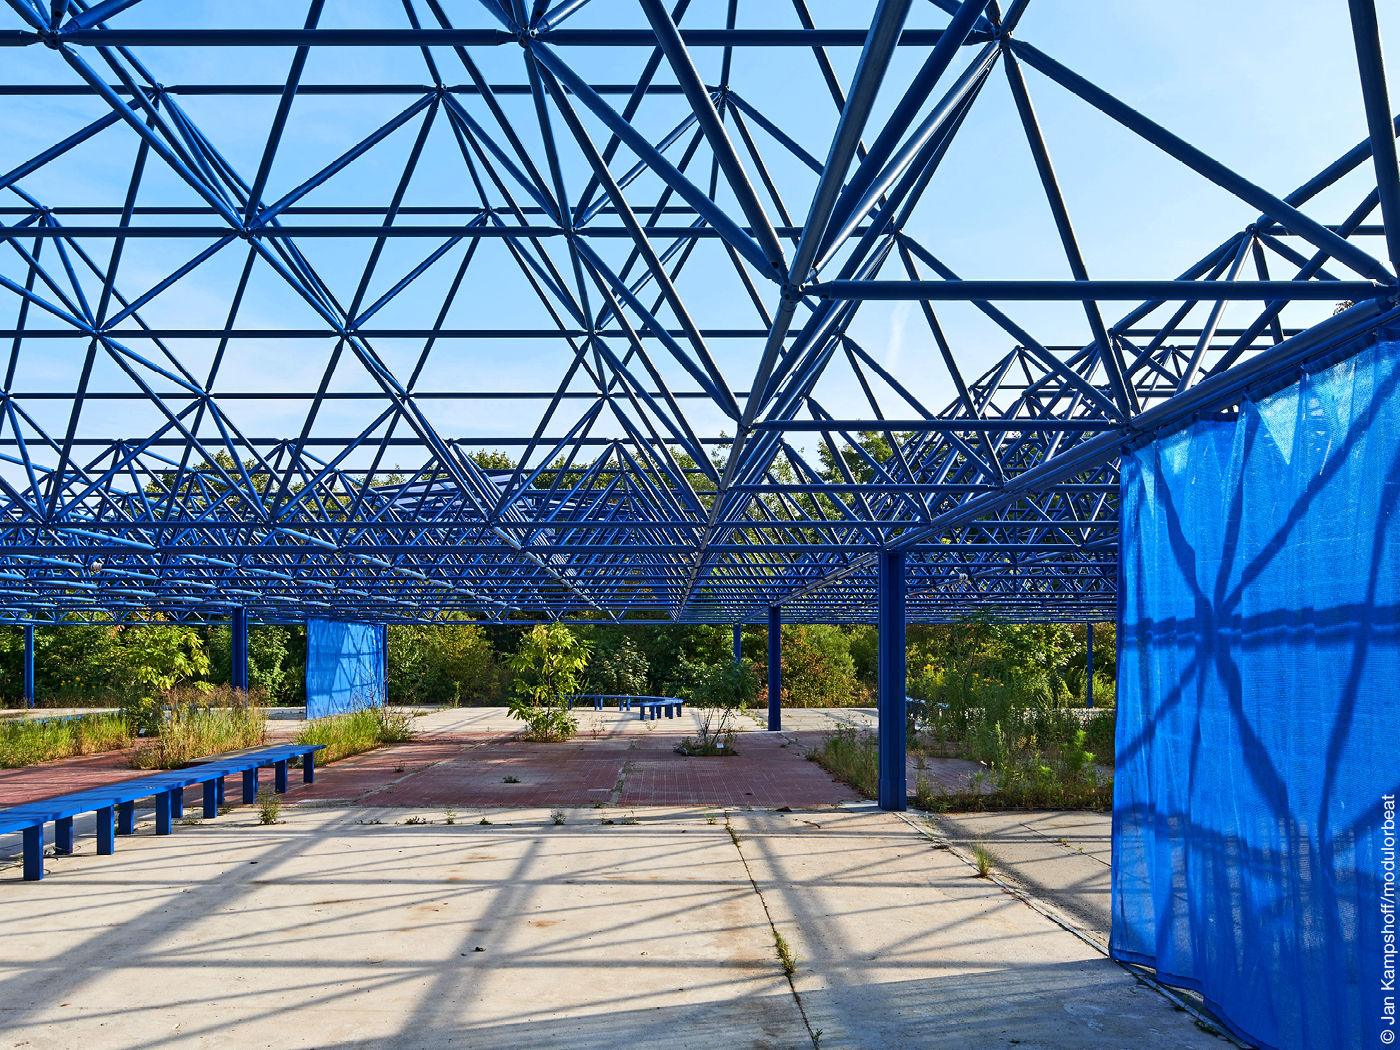 Offene Halle mit Dach aus blauem Stahlfachwerk